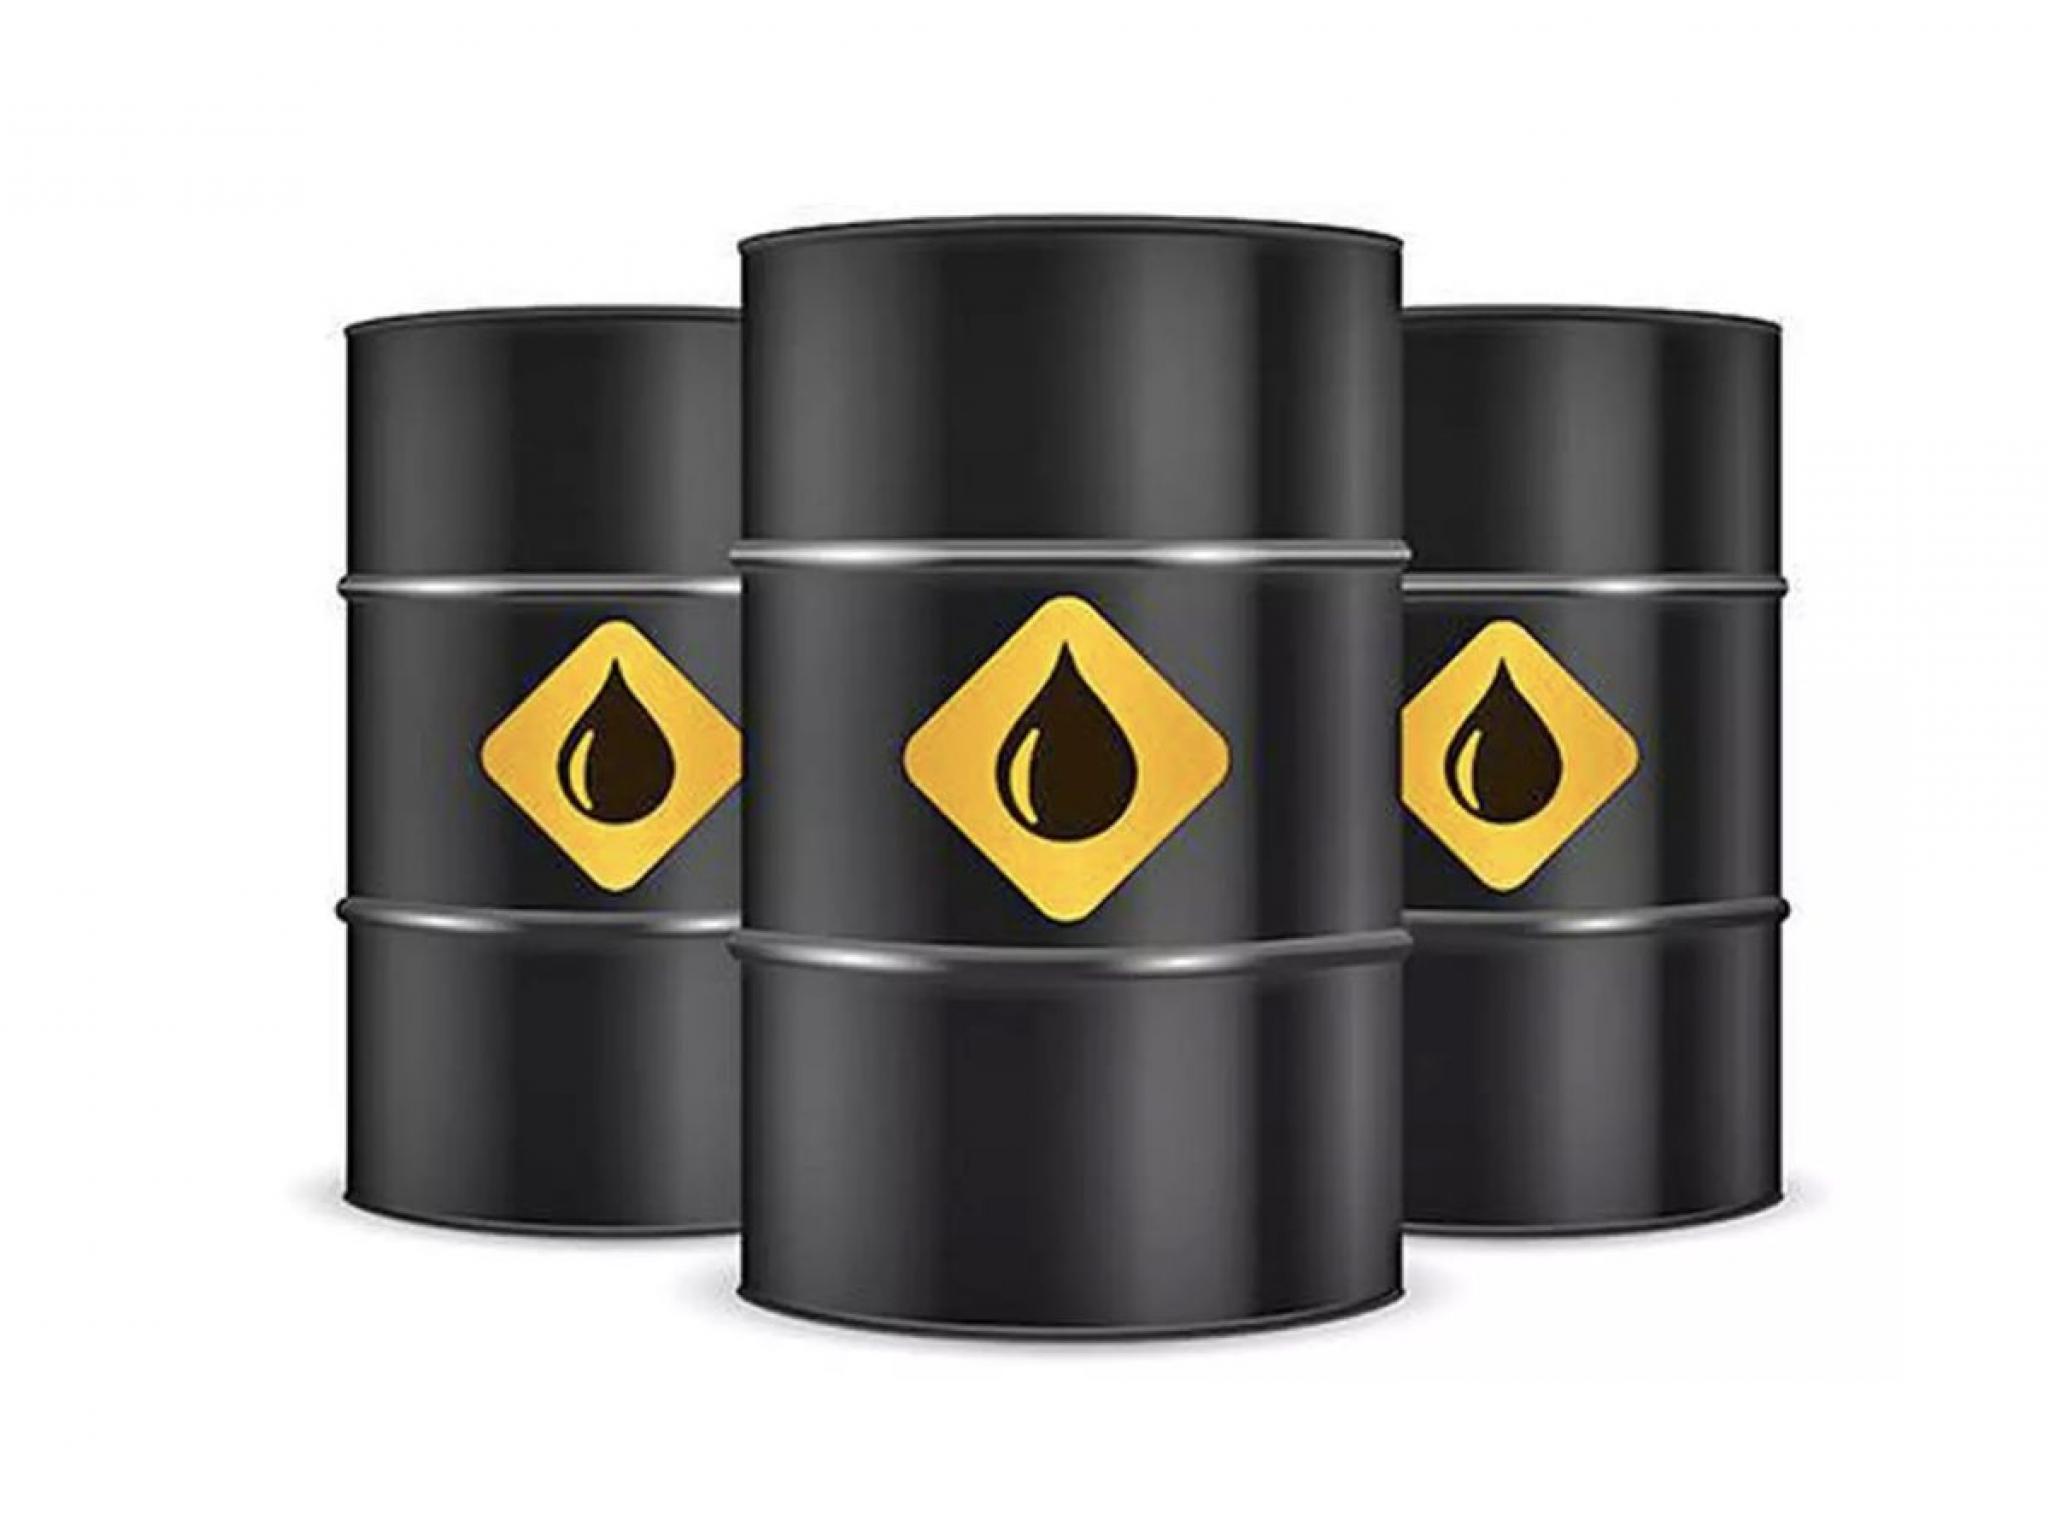  nasdaq-gains-50-points-us-crude-inventories-rise-last-week 